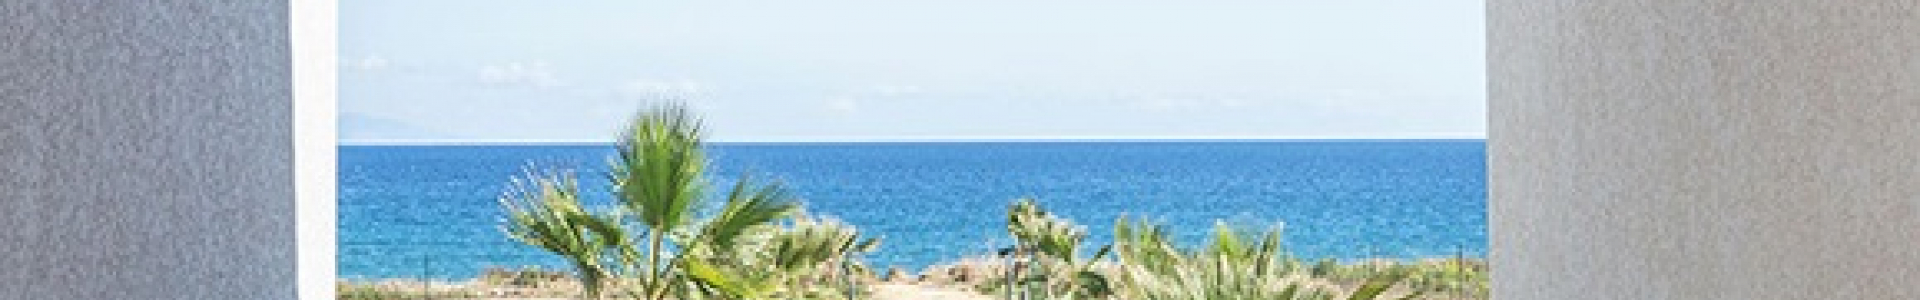 Voyage Privé : Corse, 3 ventes flash 8j/7n en résidence avec piscine, jusqu'à - 55%